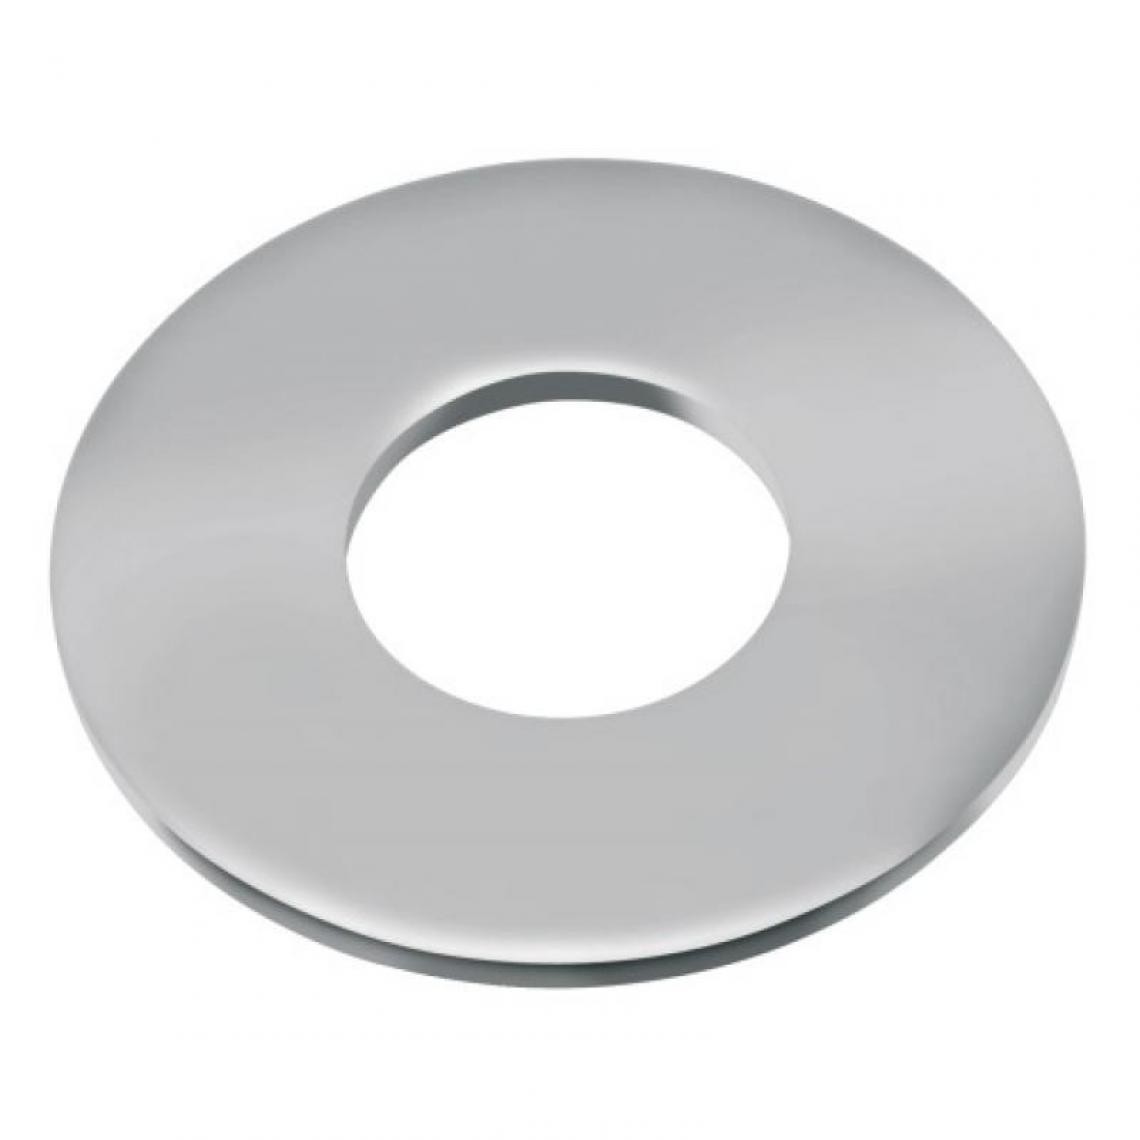 Acton - Rondelles plates série large Lu inox A4, diamètre 14 mm, boîte de 50 pièces - Charnière de fenetre